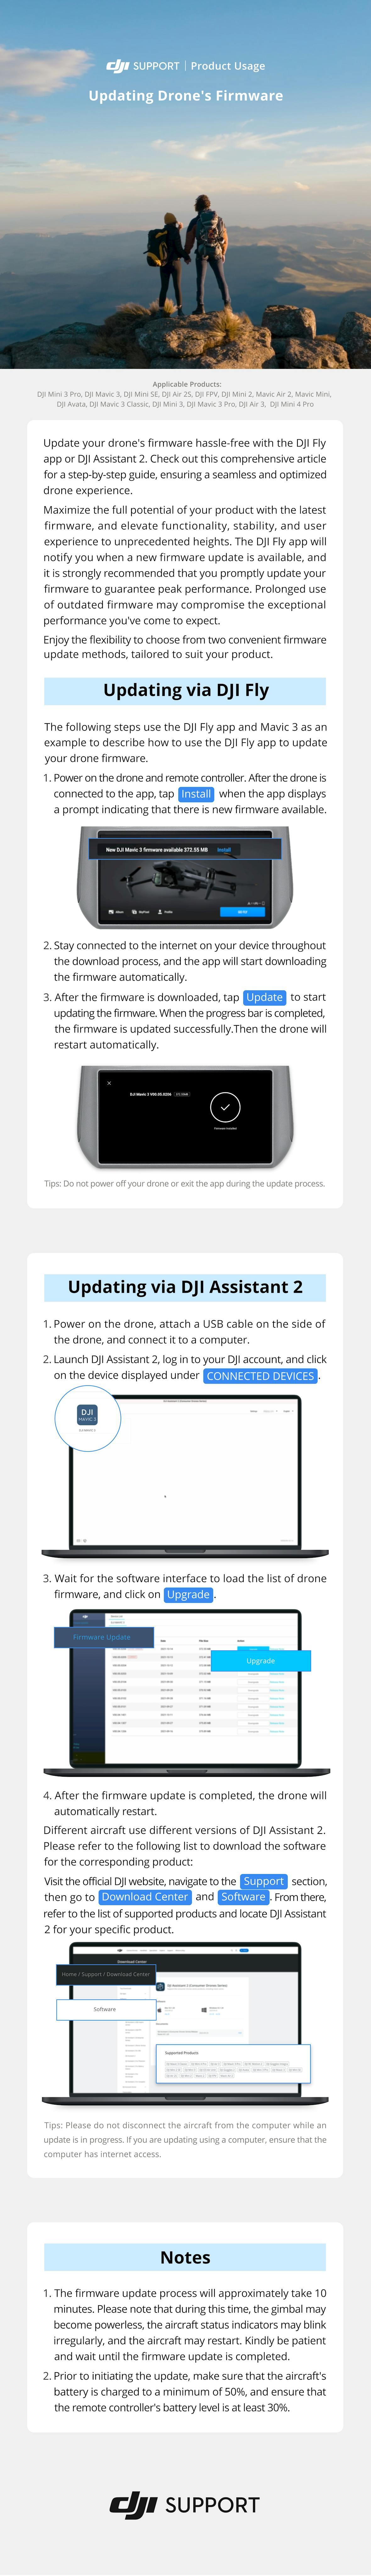 En bild från DJI Support visar hur man uppdaterar drönarens firmware via DJI Fly-appen och DJI Assistant 2. Två personer står med en drönare på en klippa. Texten betonar vikten av uppdateringar och listar tillämpliga modeller och tips.